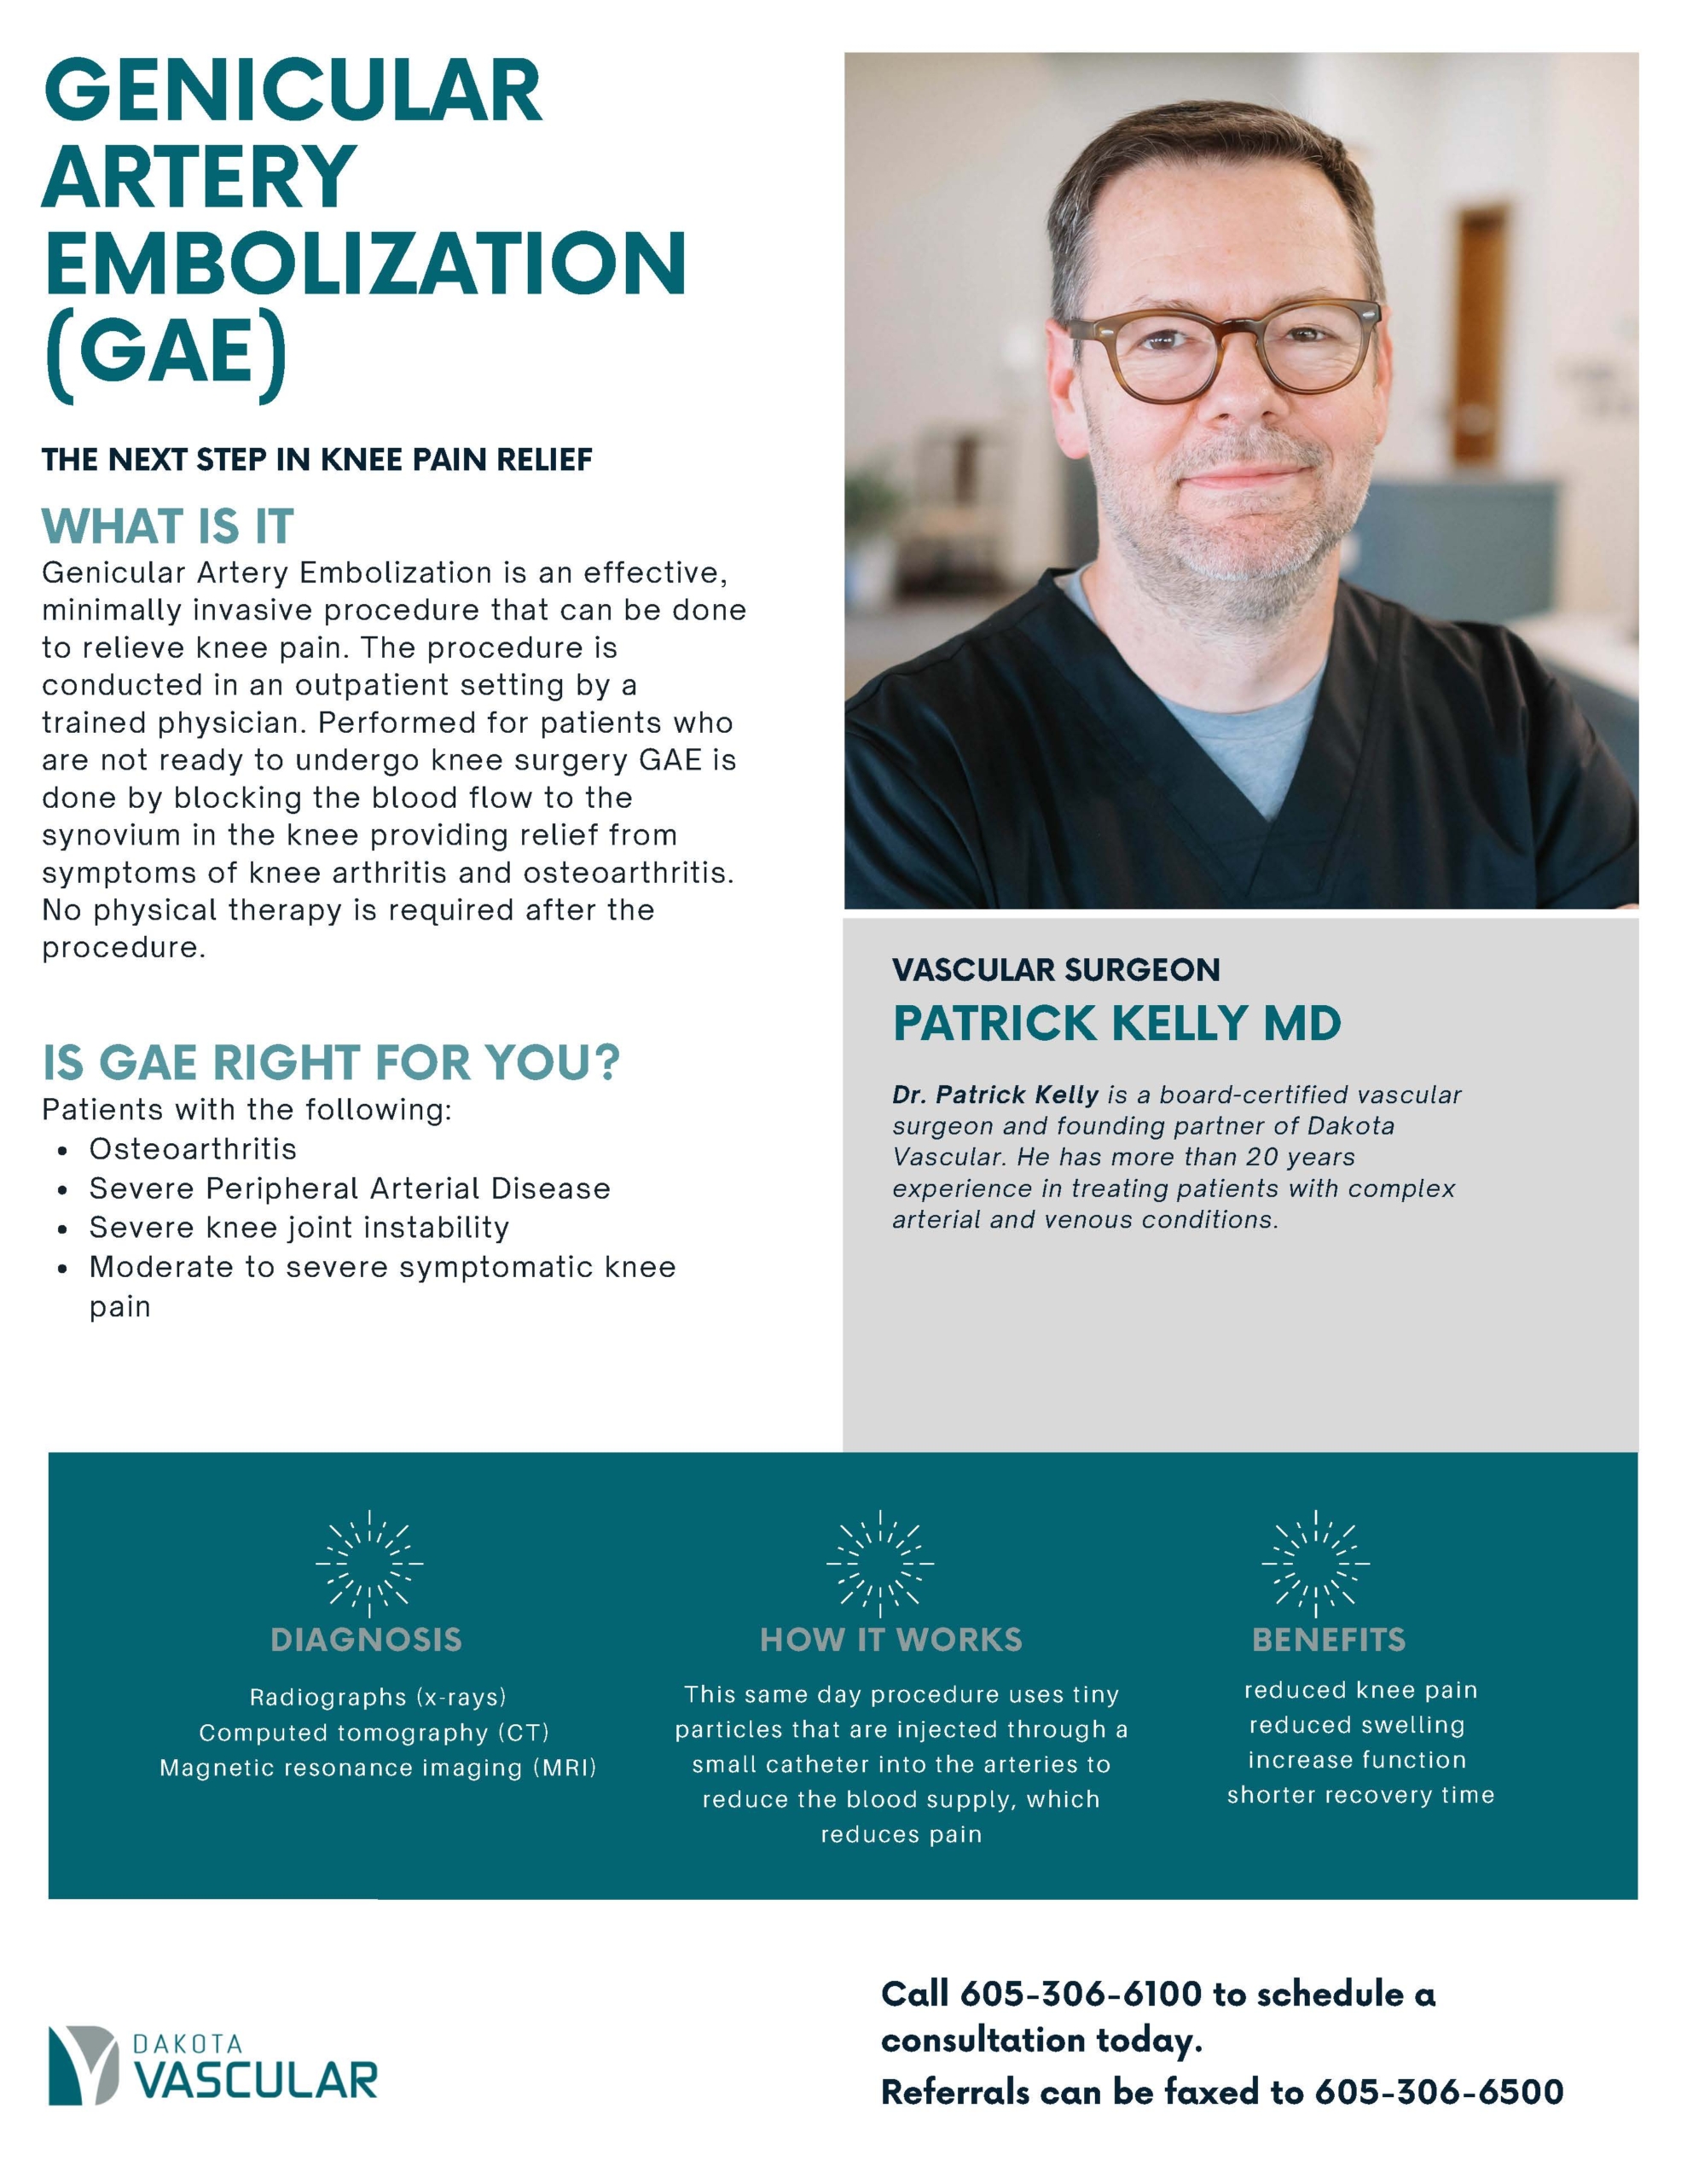 GENICULAR ARTERY EMBOLIZATION (GAE)